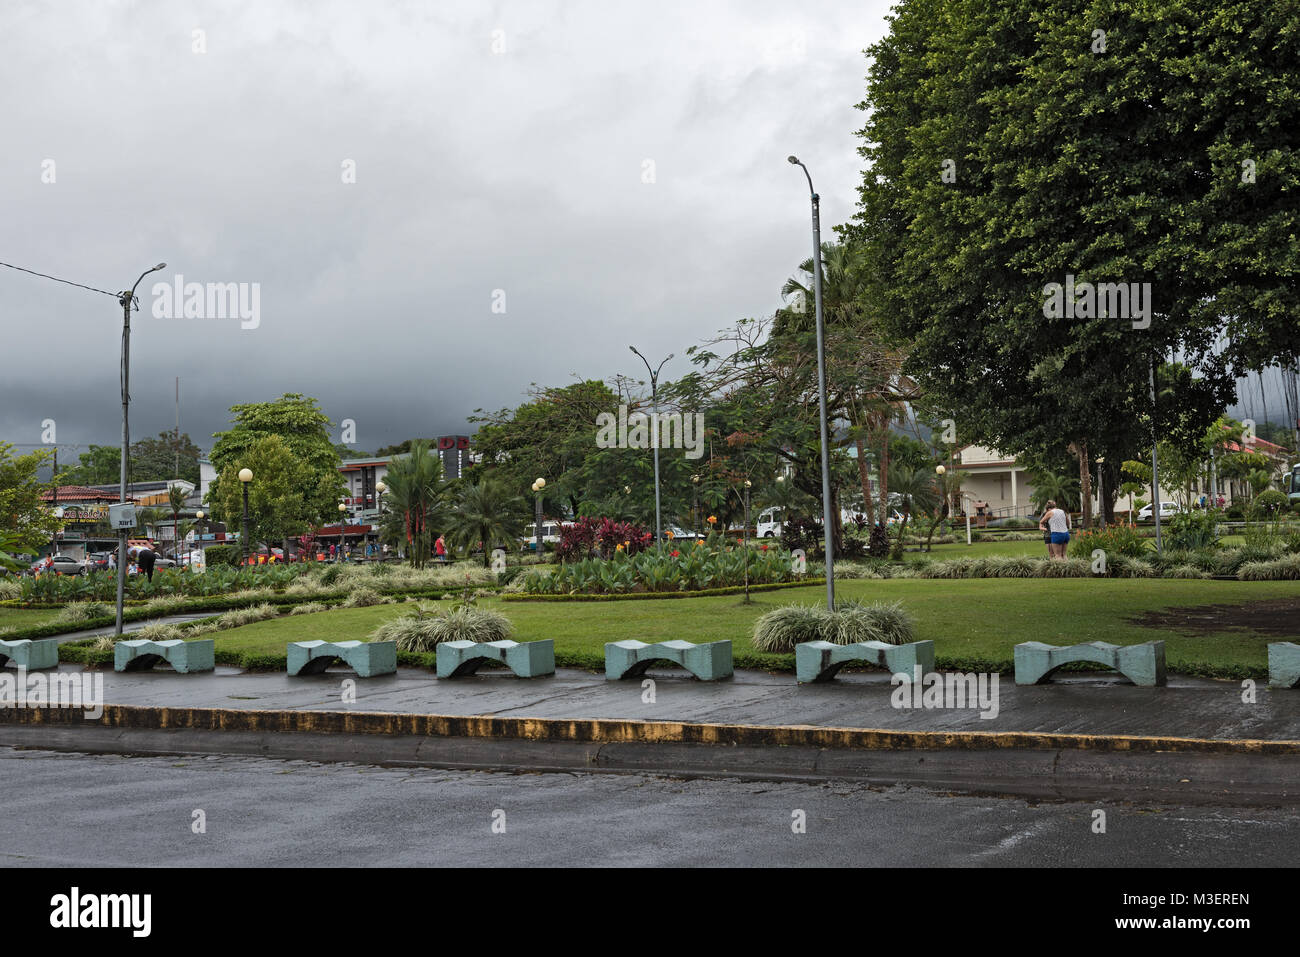 The Fortuna Park in La Fortuna in rainy weather, Costa Rica Stock Photo